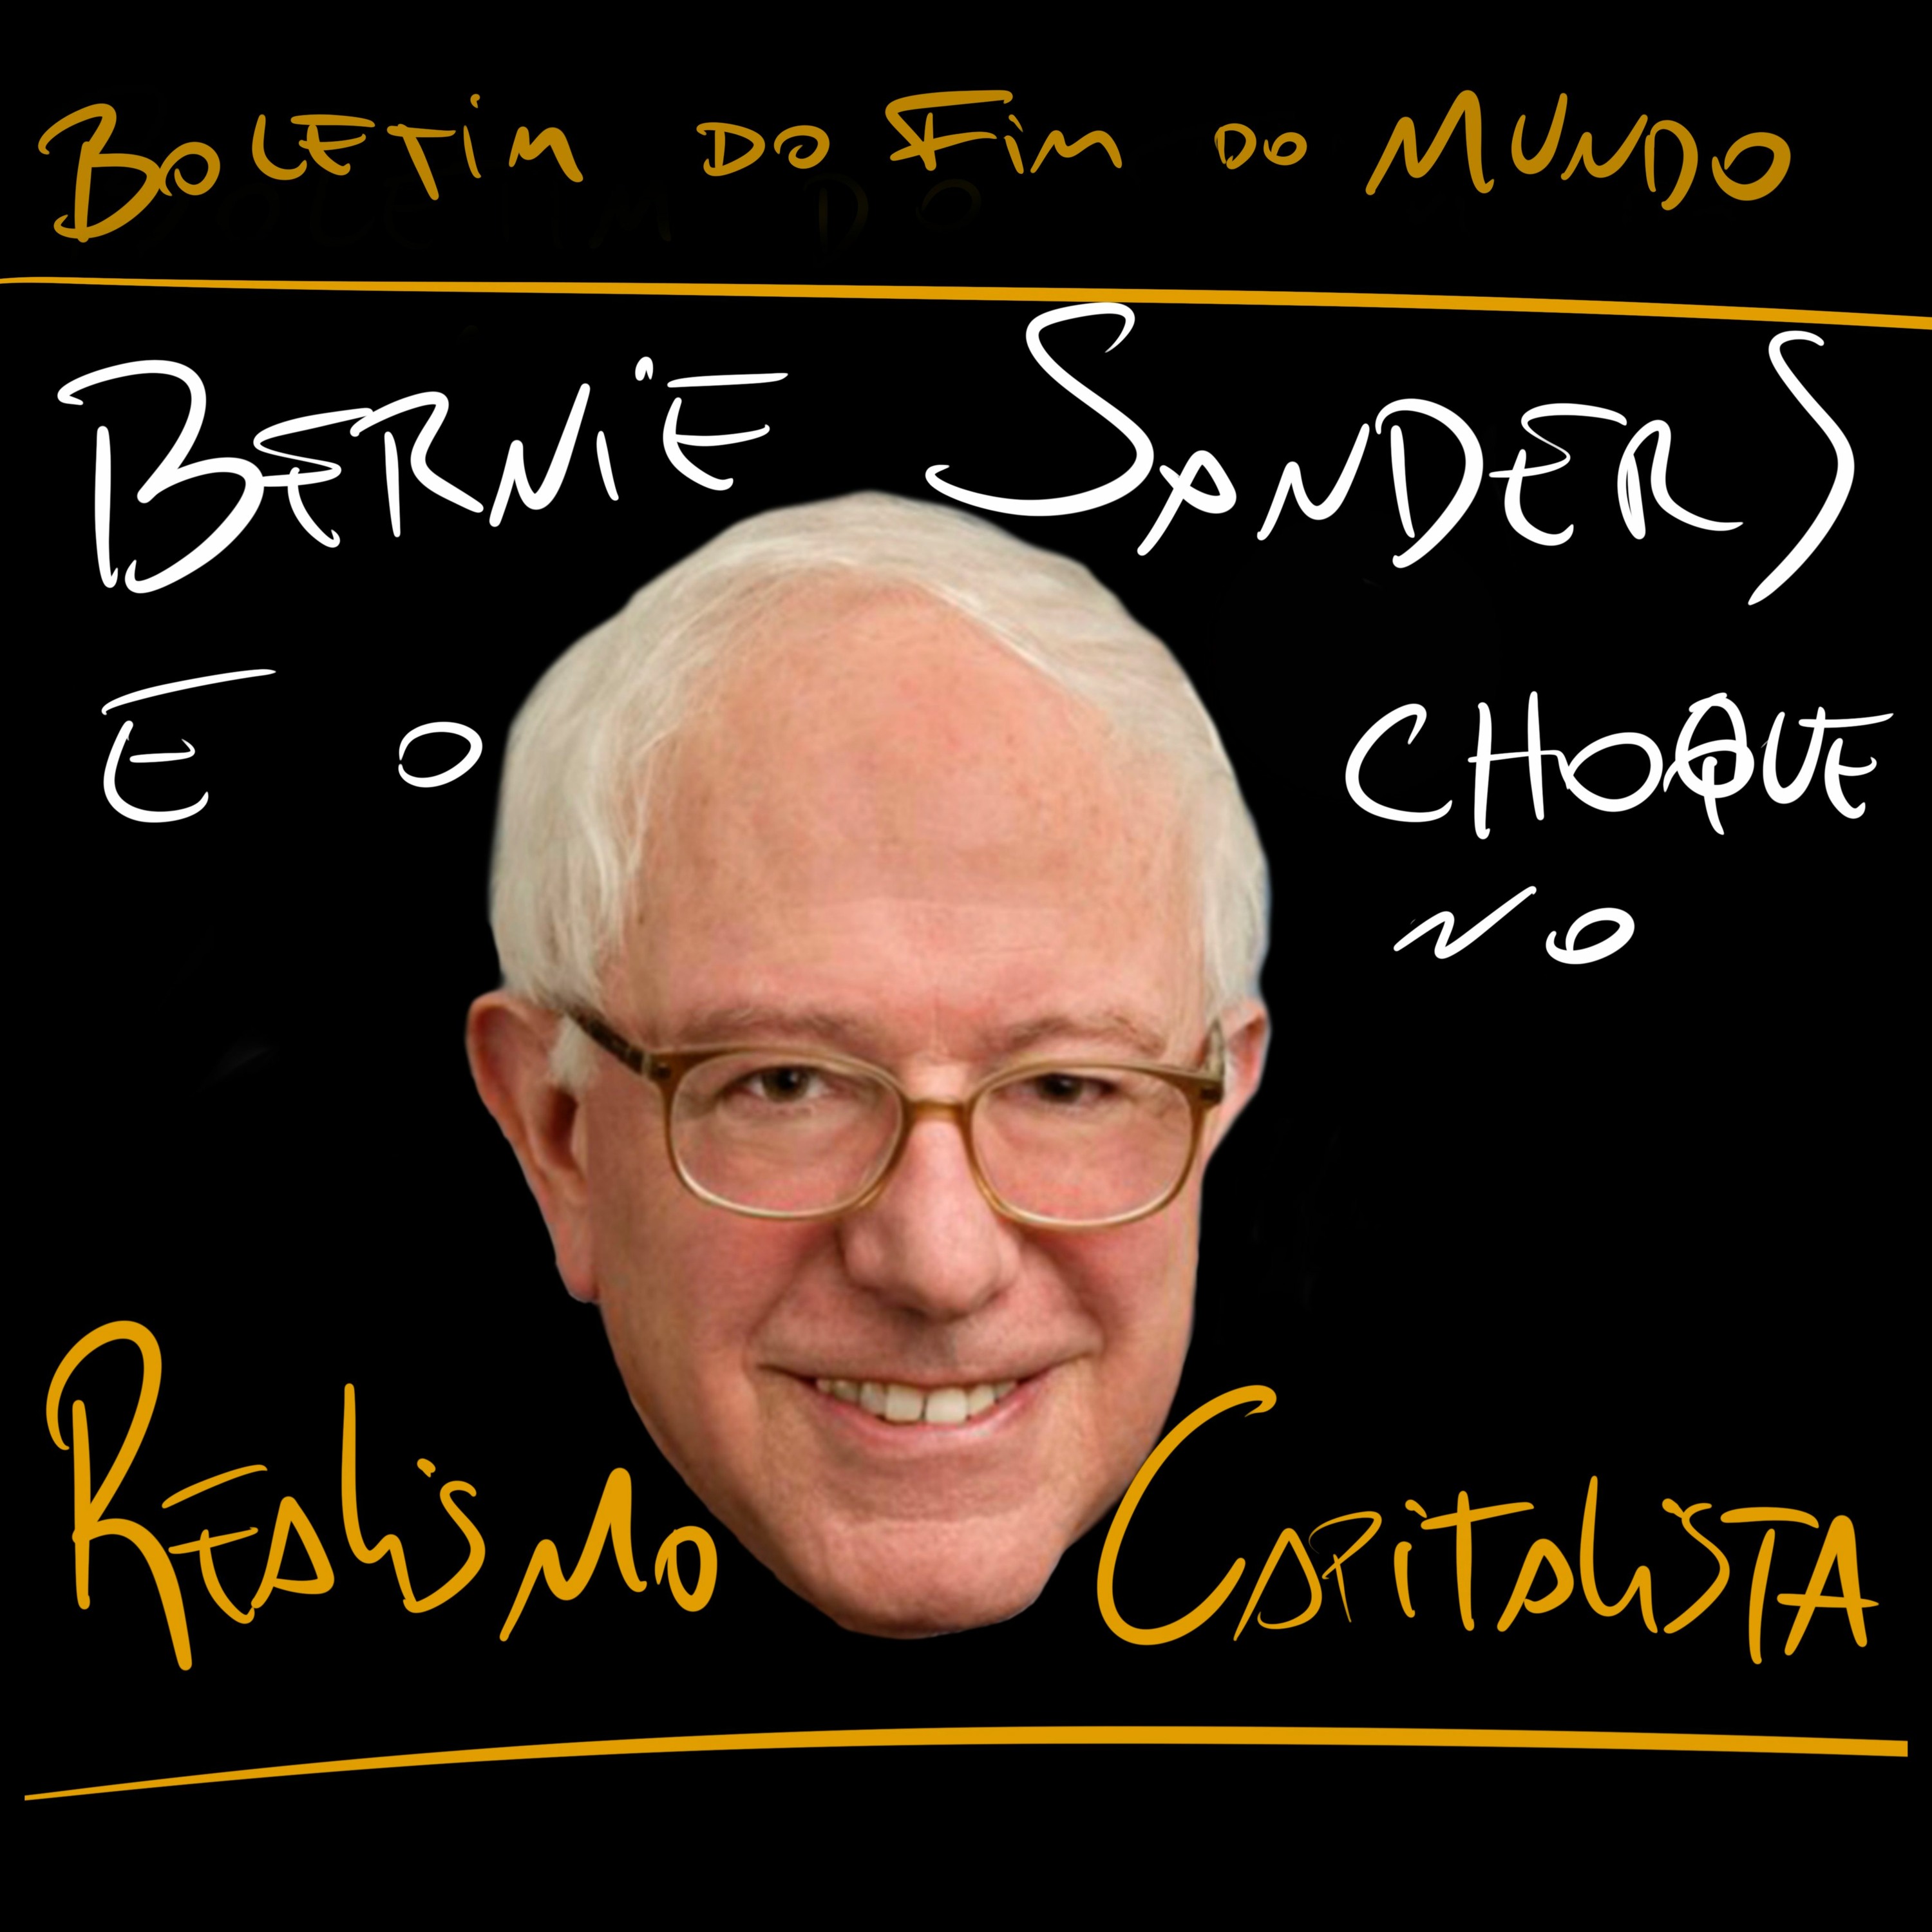 BFM - 23/2 - Bernie Sanders e o Choque no Realismo Capitalista